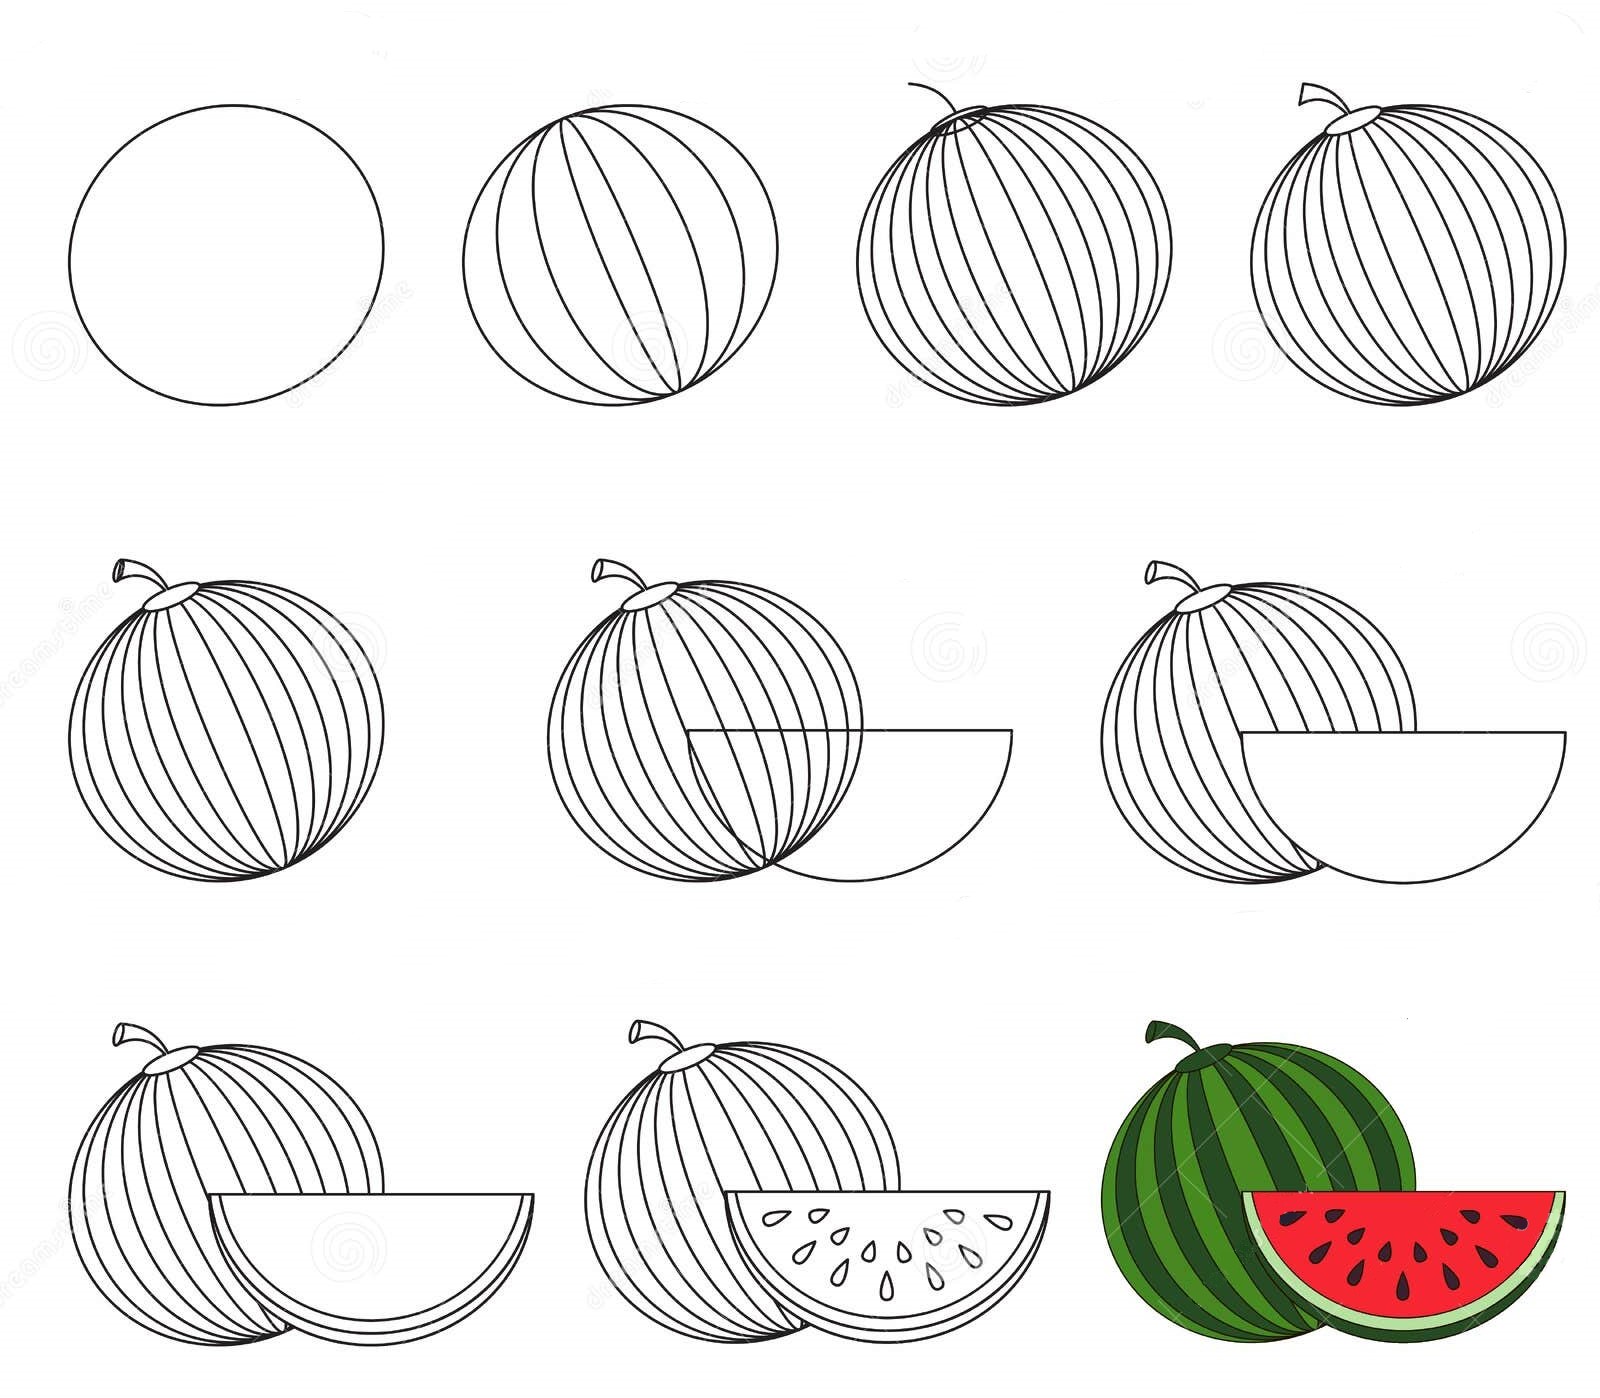 Wassermelonen-Idee (4) zeichnen ideen